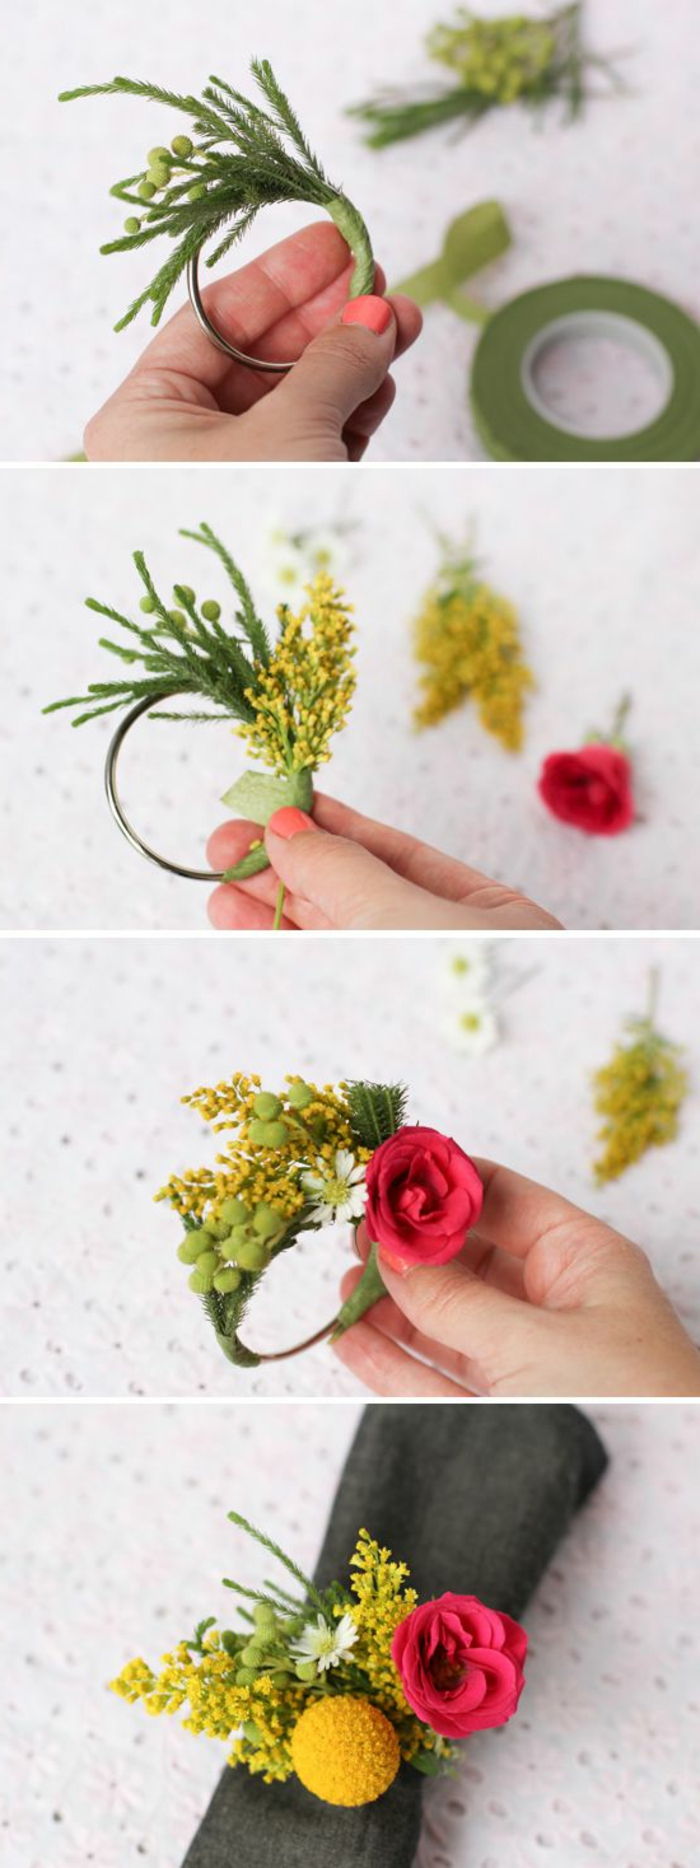 kietas kraftingų idėjų - patys puošite stalą, mažus vainikus su gėlėmis, servetėle